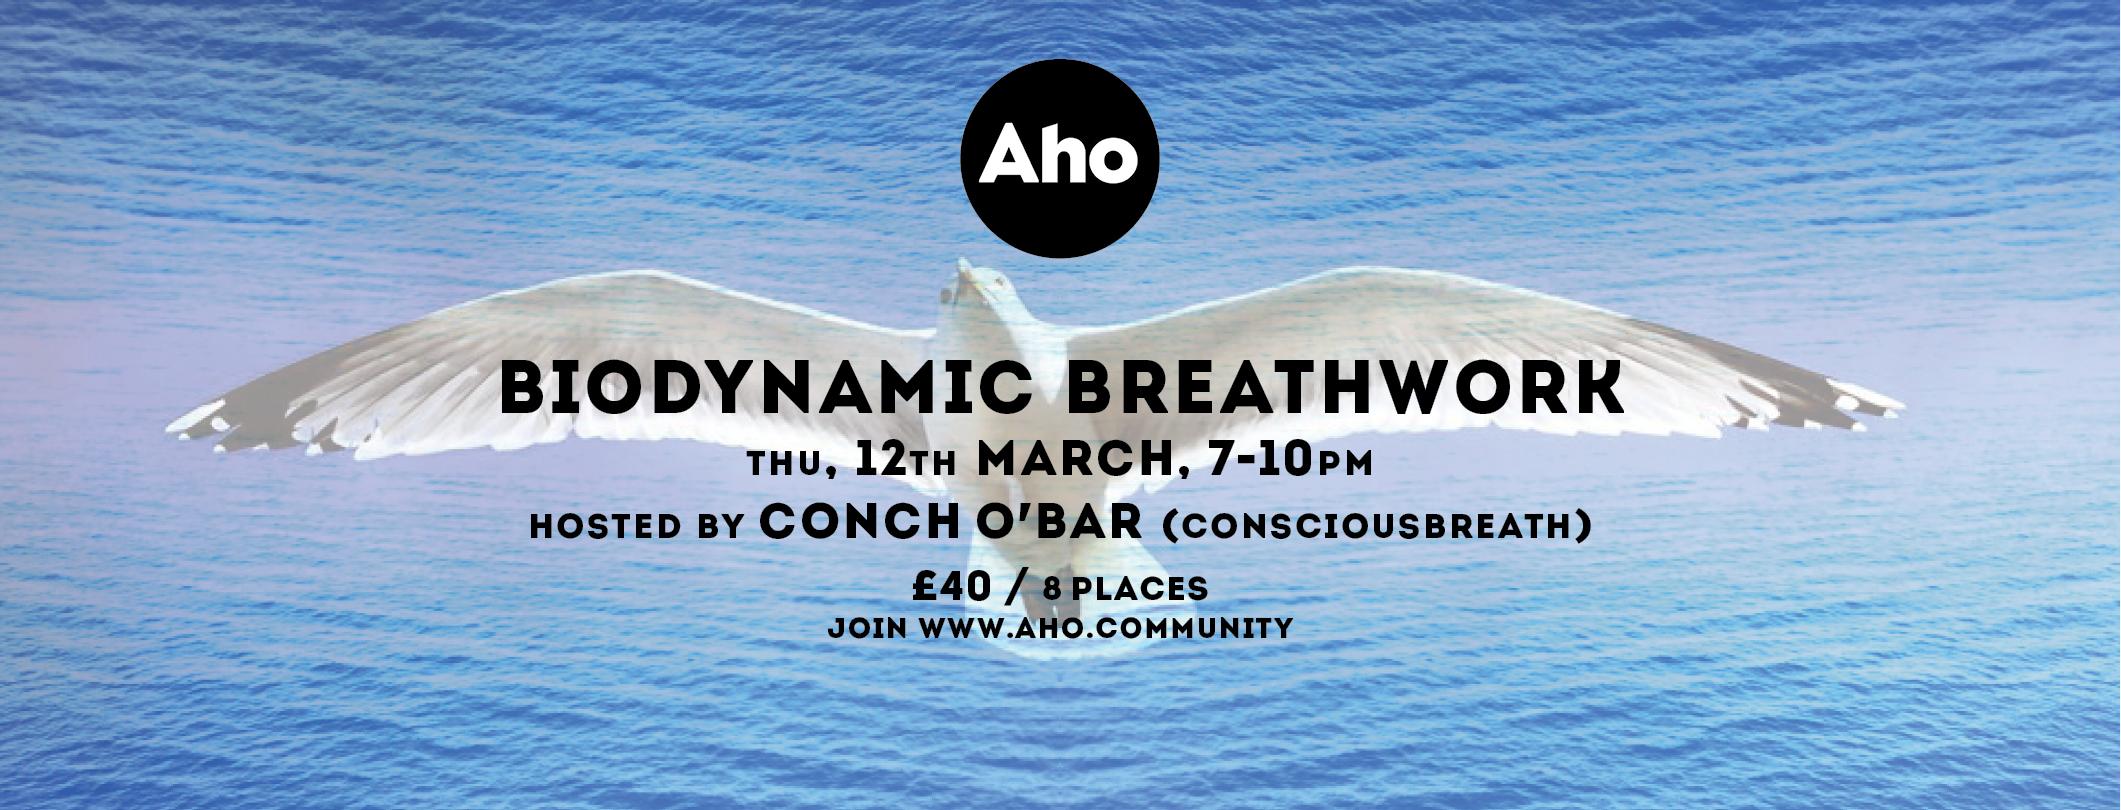 BioDynamic Breathwork With Conch O’Bar